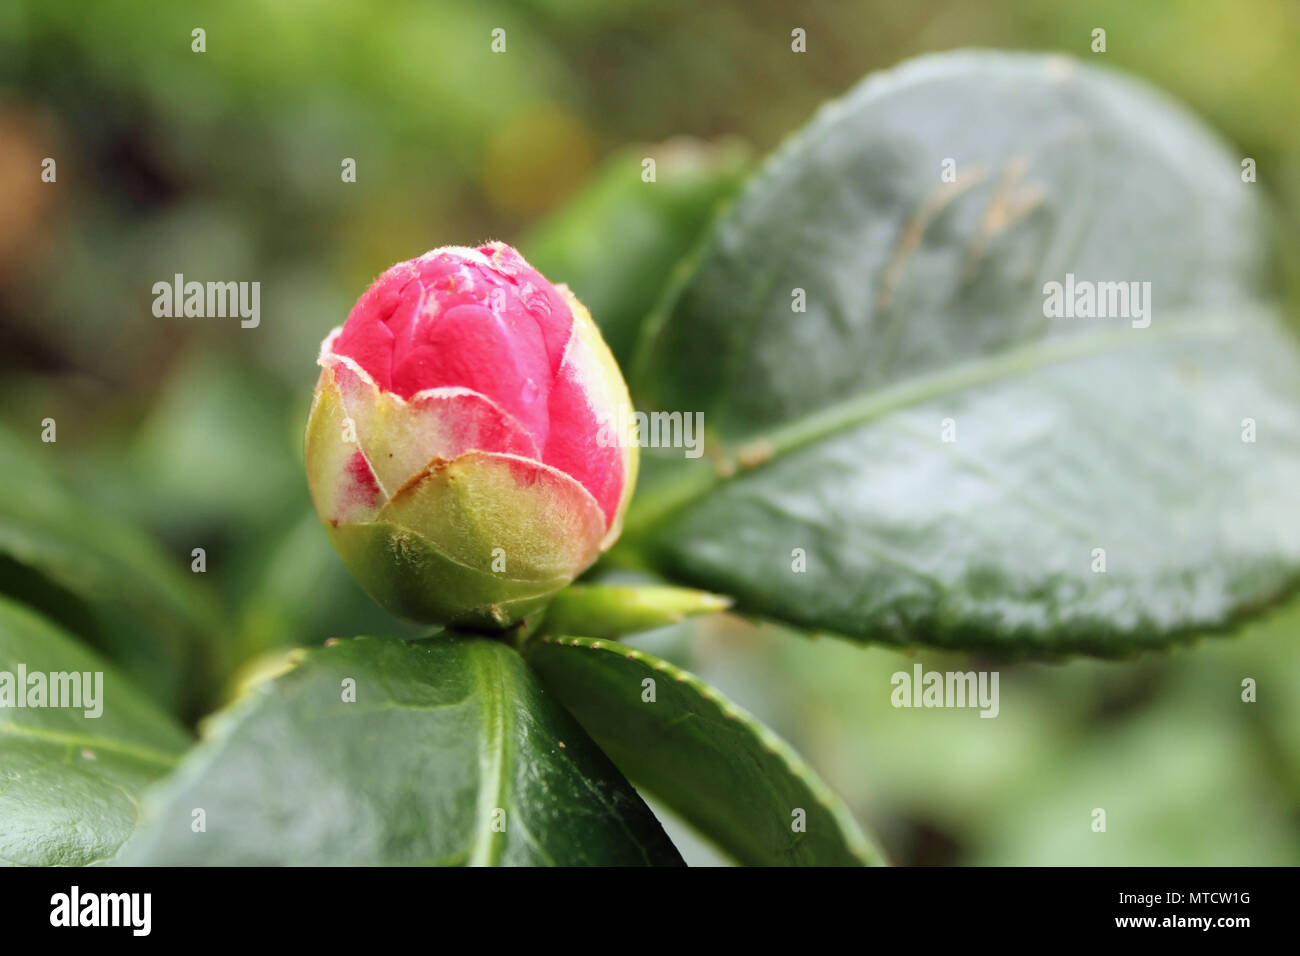 Close up, tiré d'un bokeh bouton floral rose sur le point d'ouvrir de plus en plus d'un jardin avec des feuilles et de la verdure à l'arrière-plan flou Banque D'Images